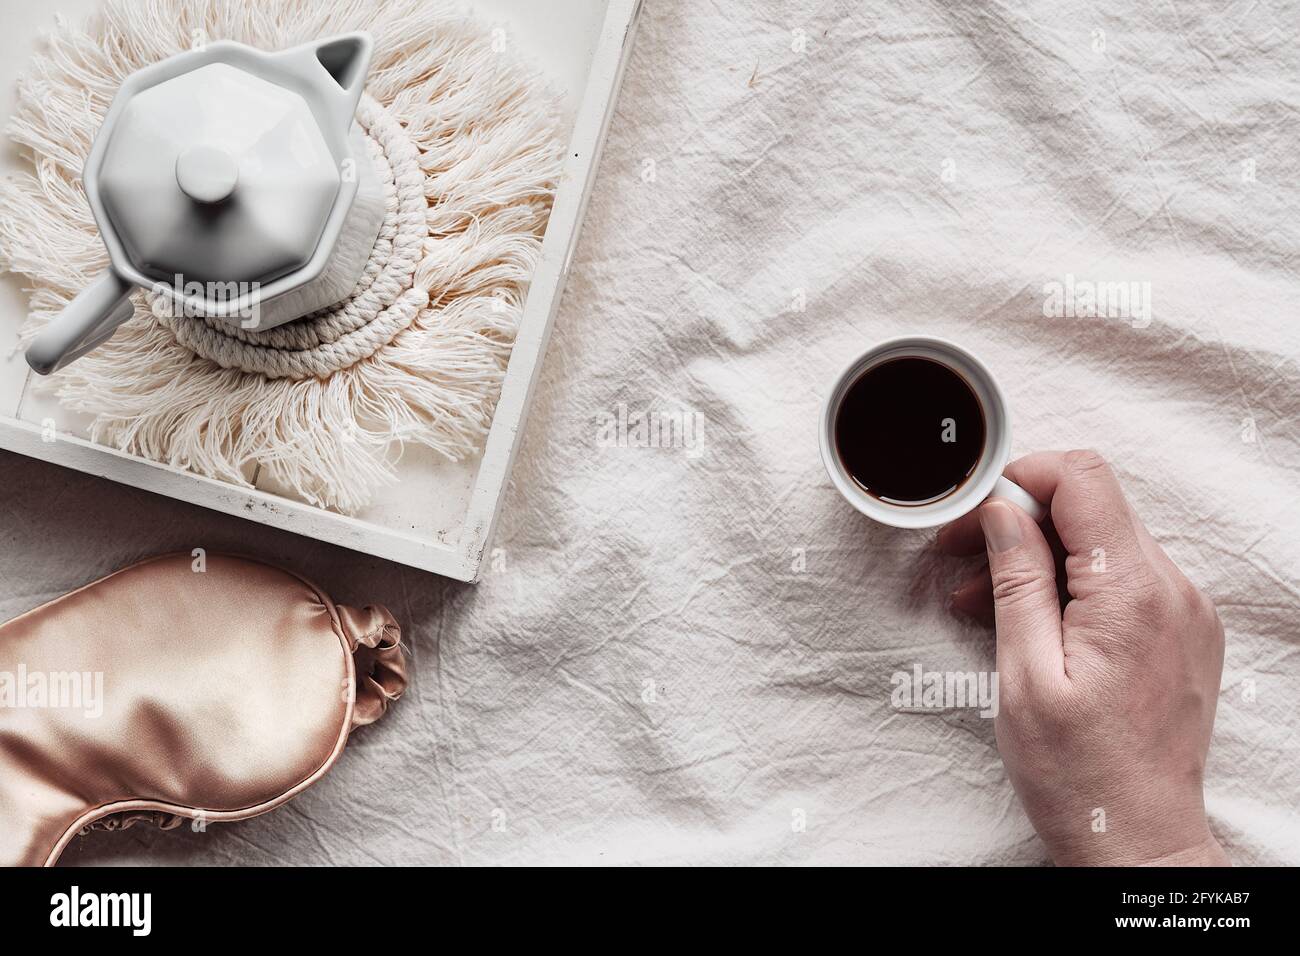 Espresso en la mano, bandeja con cafetera espresso de cerámica blanca en la moderna alfombrilla macrame. Máscara para dormir sobre sábanas arrugadas. Mano femenina con taza de Foto de stock